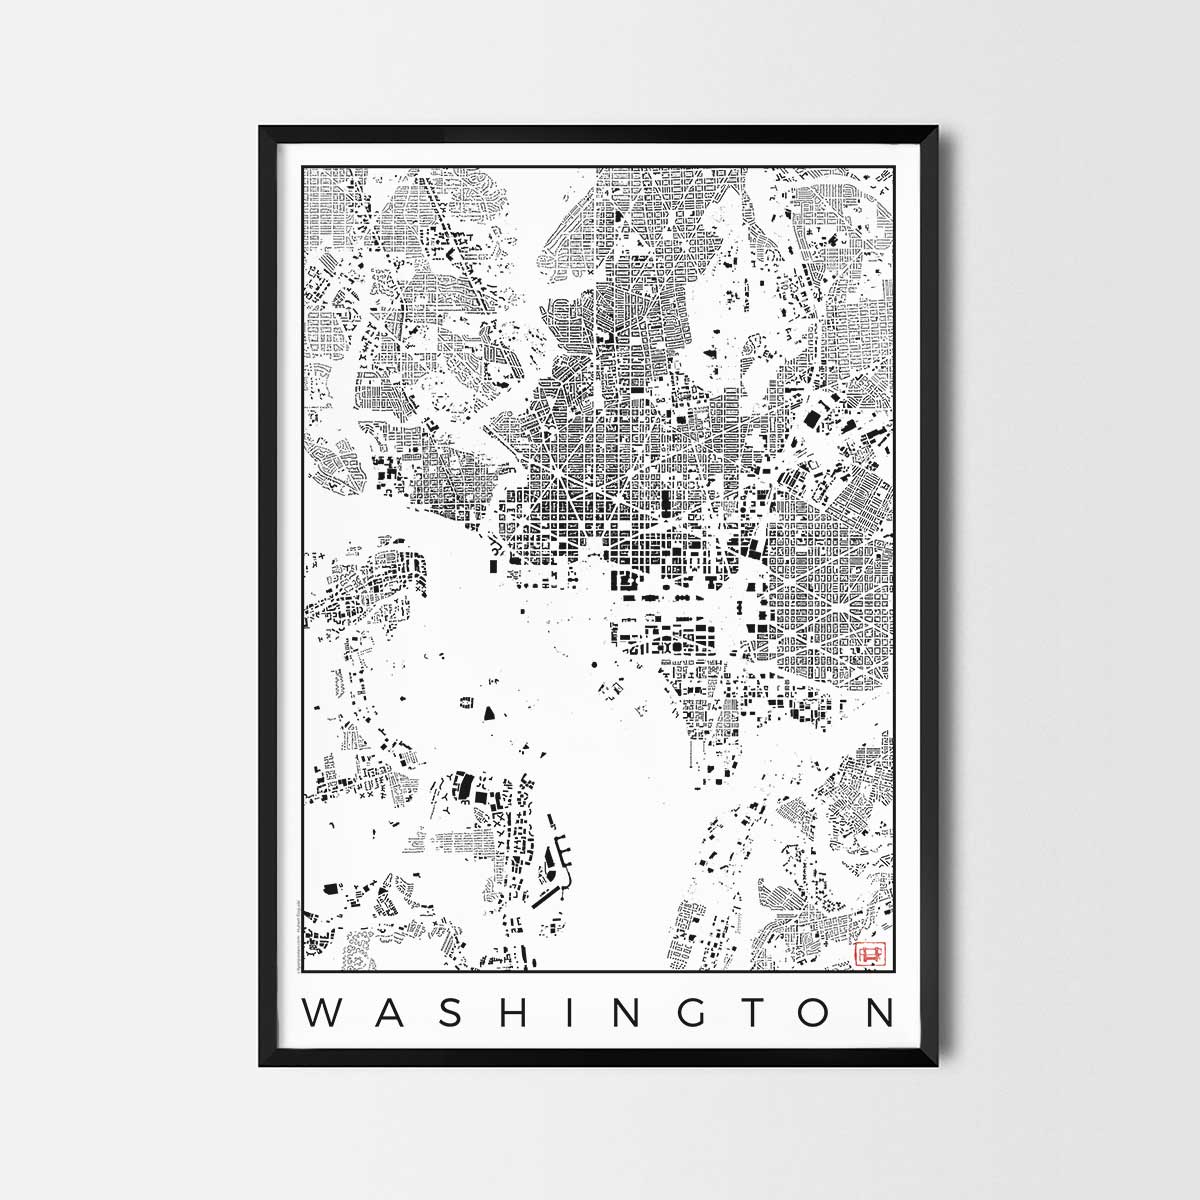 Washington Map Poster schwarzplan Urban plan city map art posters map posters city art prints city posters